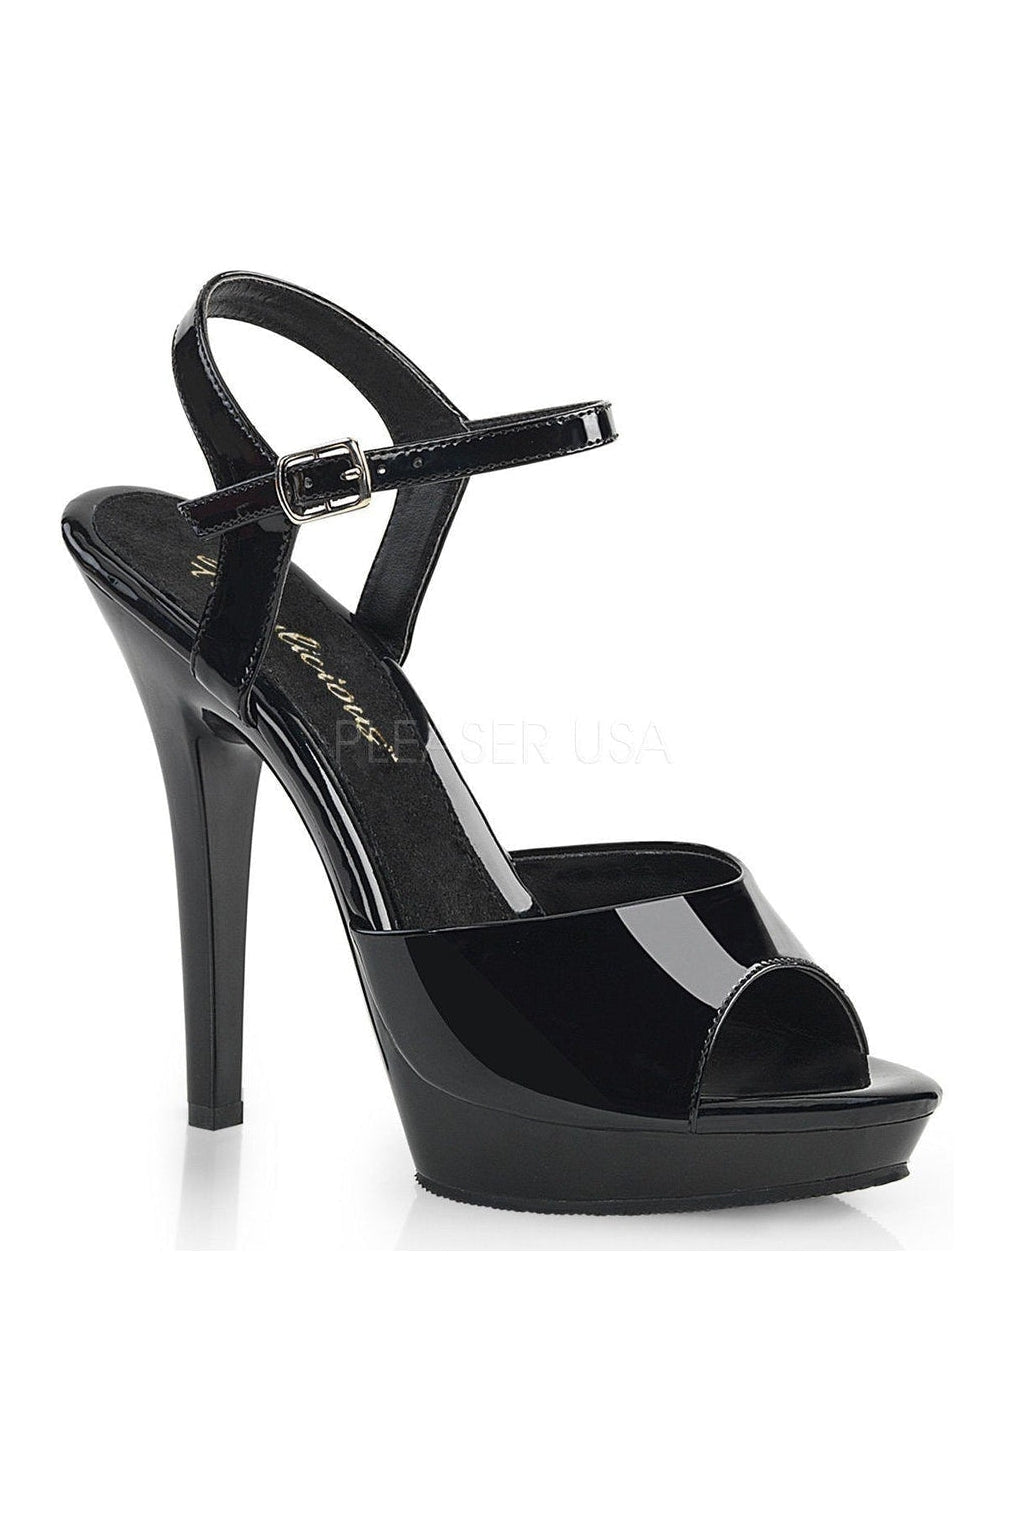 LIP-109 Sandal | Black Patent-Fabulicious-Black-Sandals-SEXYSHOES.COM